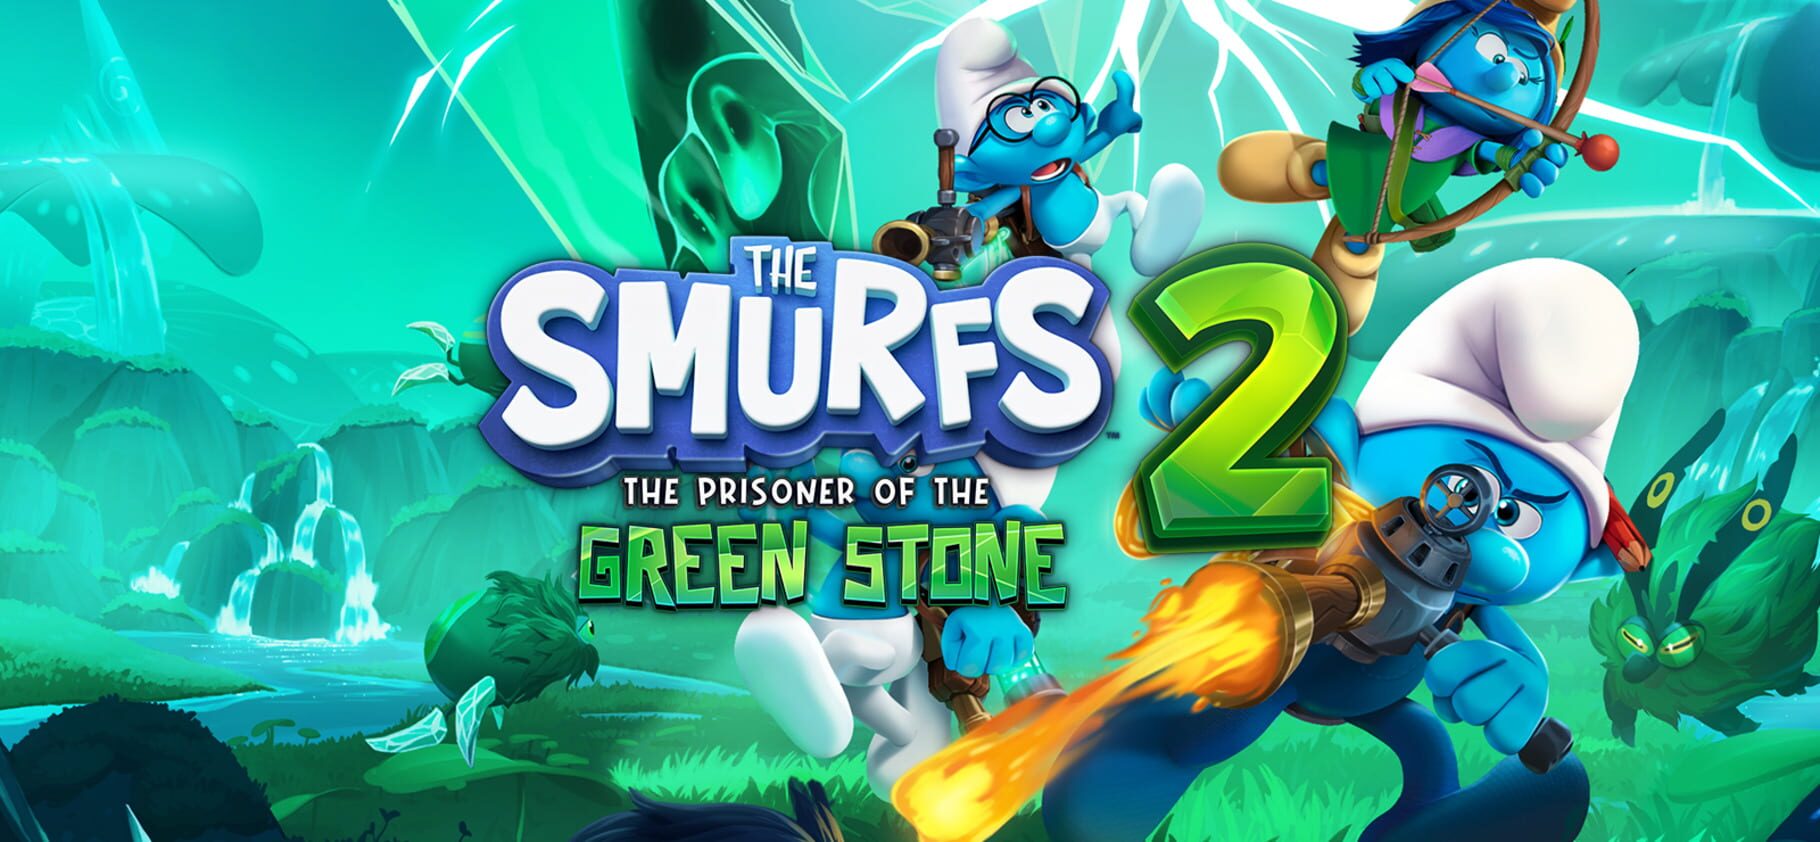 The Smurfs 2: The Prisoner of the Green Stone artwork